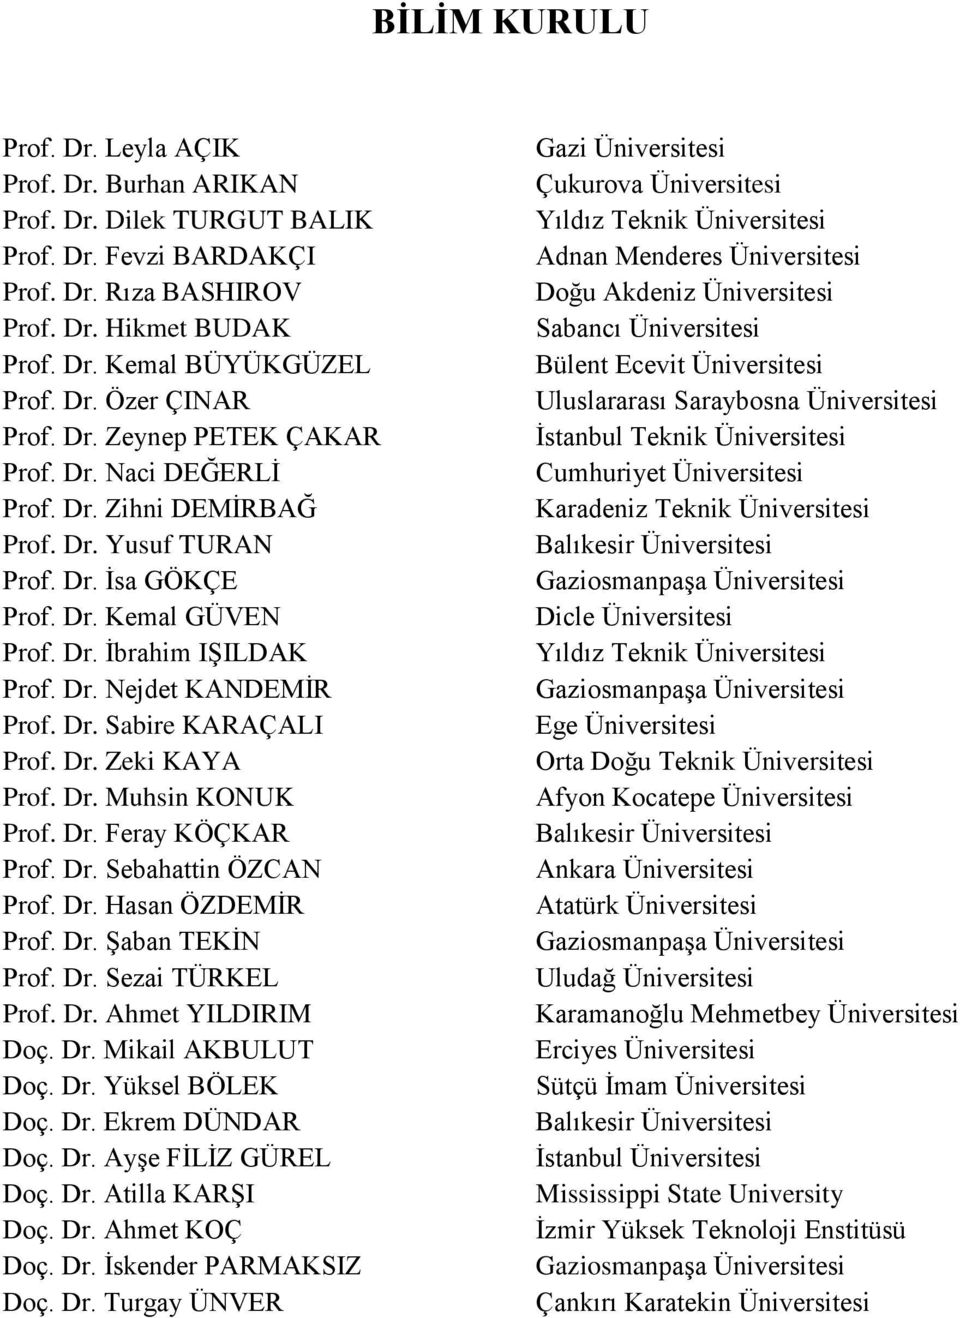 Dr. Zeki KAYA Prof. Dr. Muhsin KONUK Prof. Dr. Feray KÖÇKAR Prof. Dr. Sebahattin ÖZCAN Prof. Dr. Hasan ÖZDEMİR Prof. Dr. Şaban TEKİN Prof. Dr. Sezai TÜRKEL Prof. Dr. Ahmet YILDIRIM Doç. Dr. Mikail AKBULUT Doç.